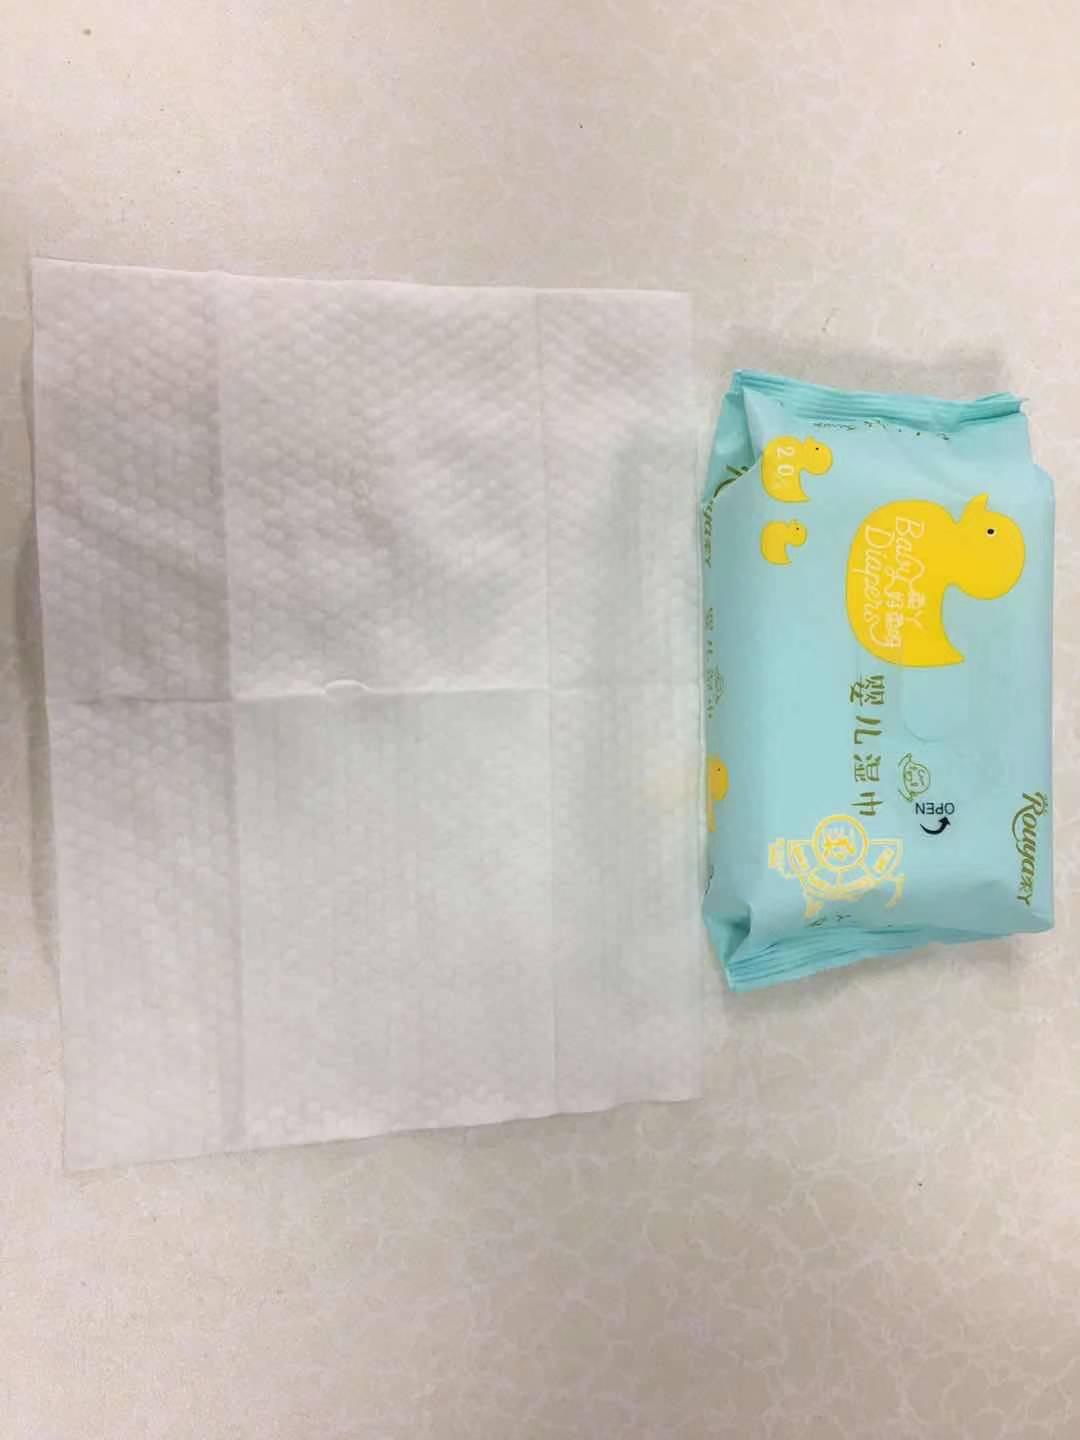 Zachte vochtige babydoekjes van hoge kwaliteit om te desinfecteren